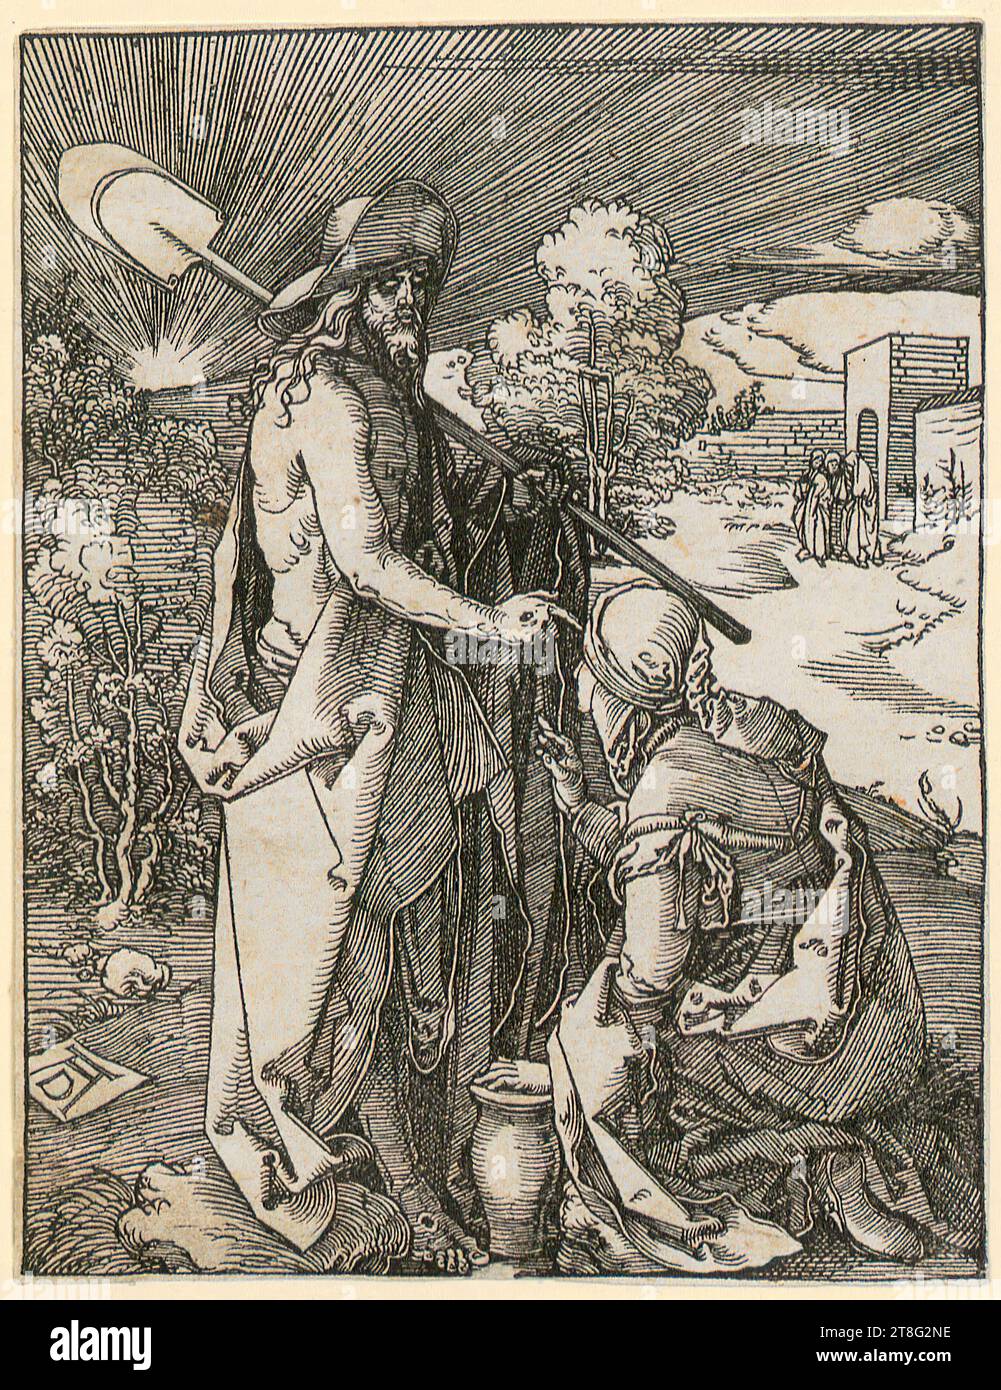 Albrecht Dürer (1471 - 1528), petite gravure sur bois passion, Albrecht Dürer (1471 - 1528), artiste, Christ apparaît à Magdalena, feuille 32 de la série 'petite gravure sur bois passion', origine du support d'impression : vers 1510, gravure sur bois, taille de la feuille : 12,7 x 9,8 cm, monogrammé 'ad' en bas à gauche sur la plaque Banque D'Images